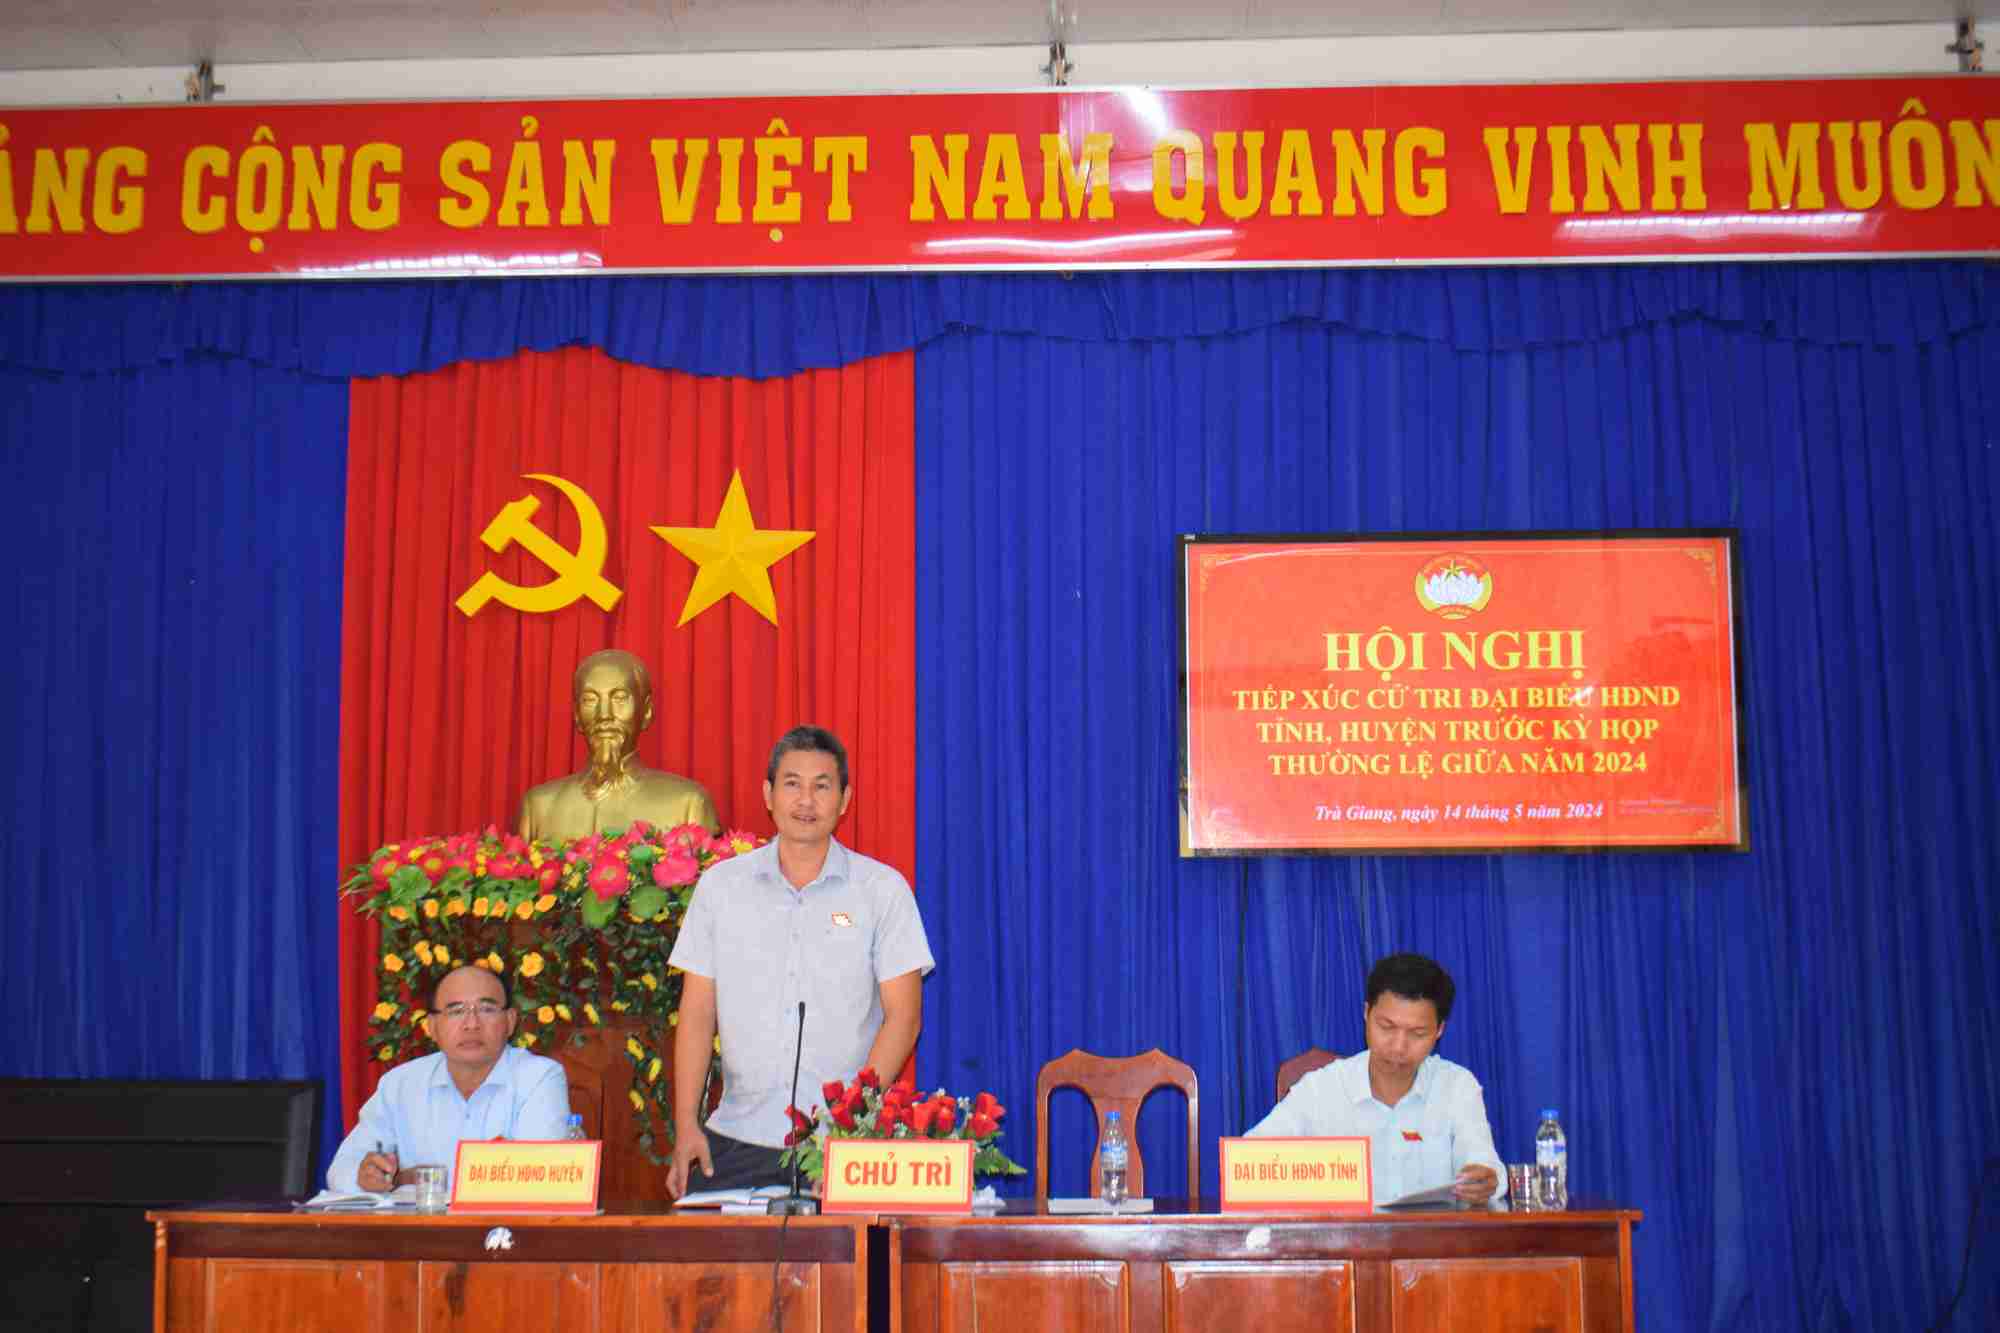 Hội nghị Tiếp xúc cử tri trước kỳ họp thường kỳ giữa năm tại Trà Giang